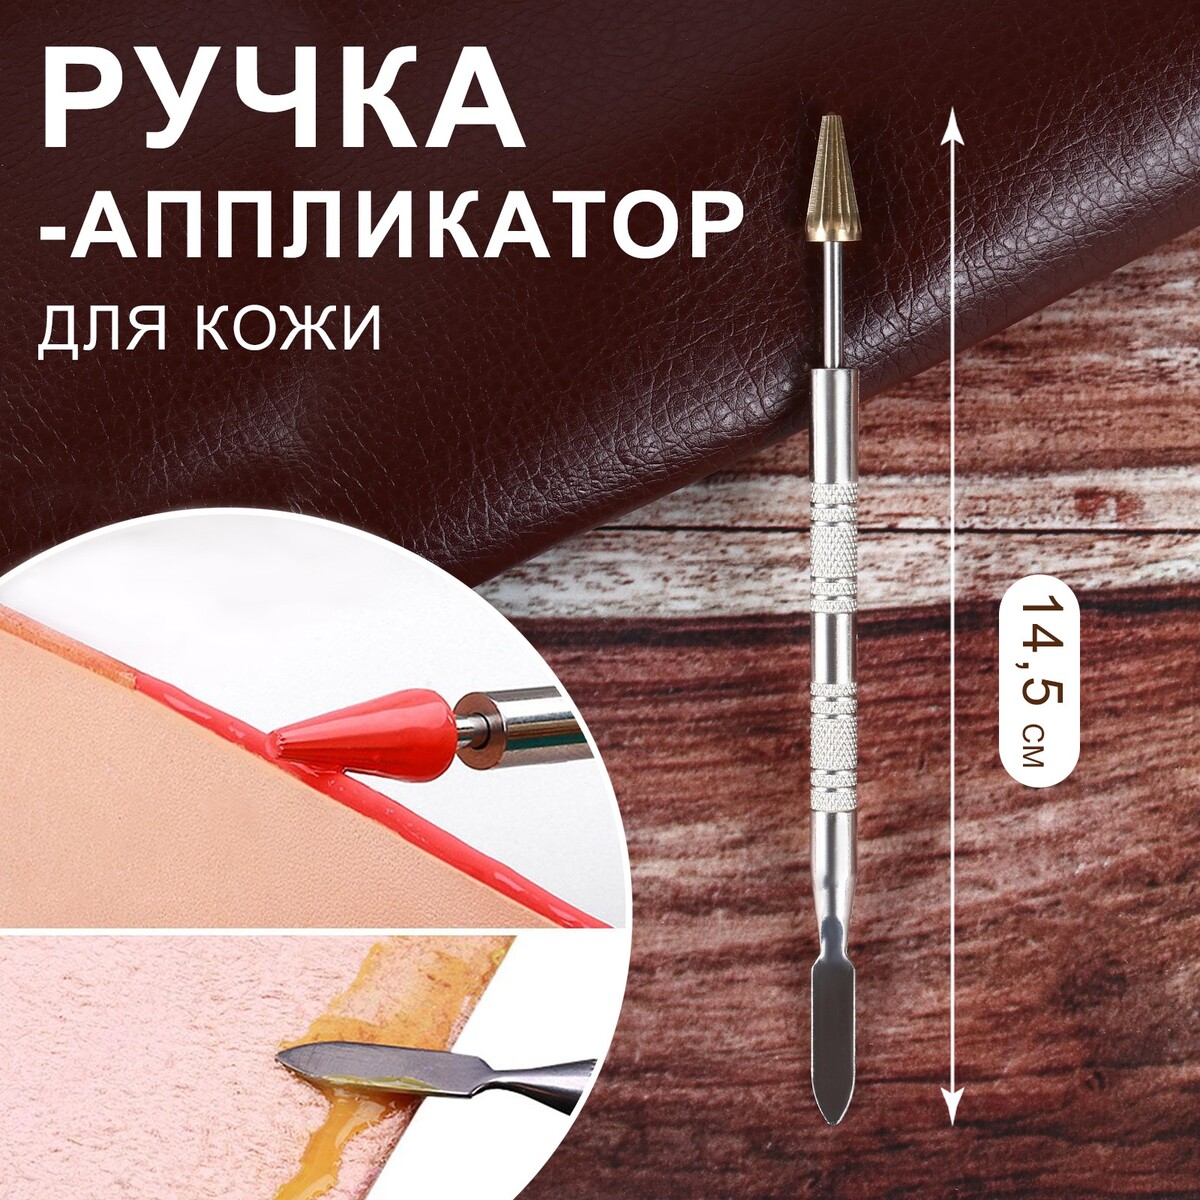 Ручка-аппликатор для кожи, 14,5 см, цвет серебряный/золотой аппликатор двухсторонний 115 057